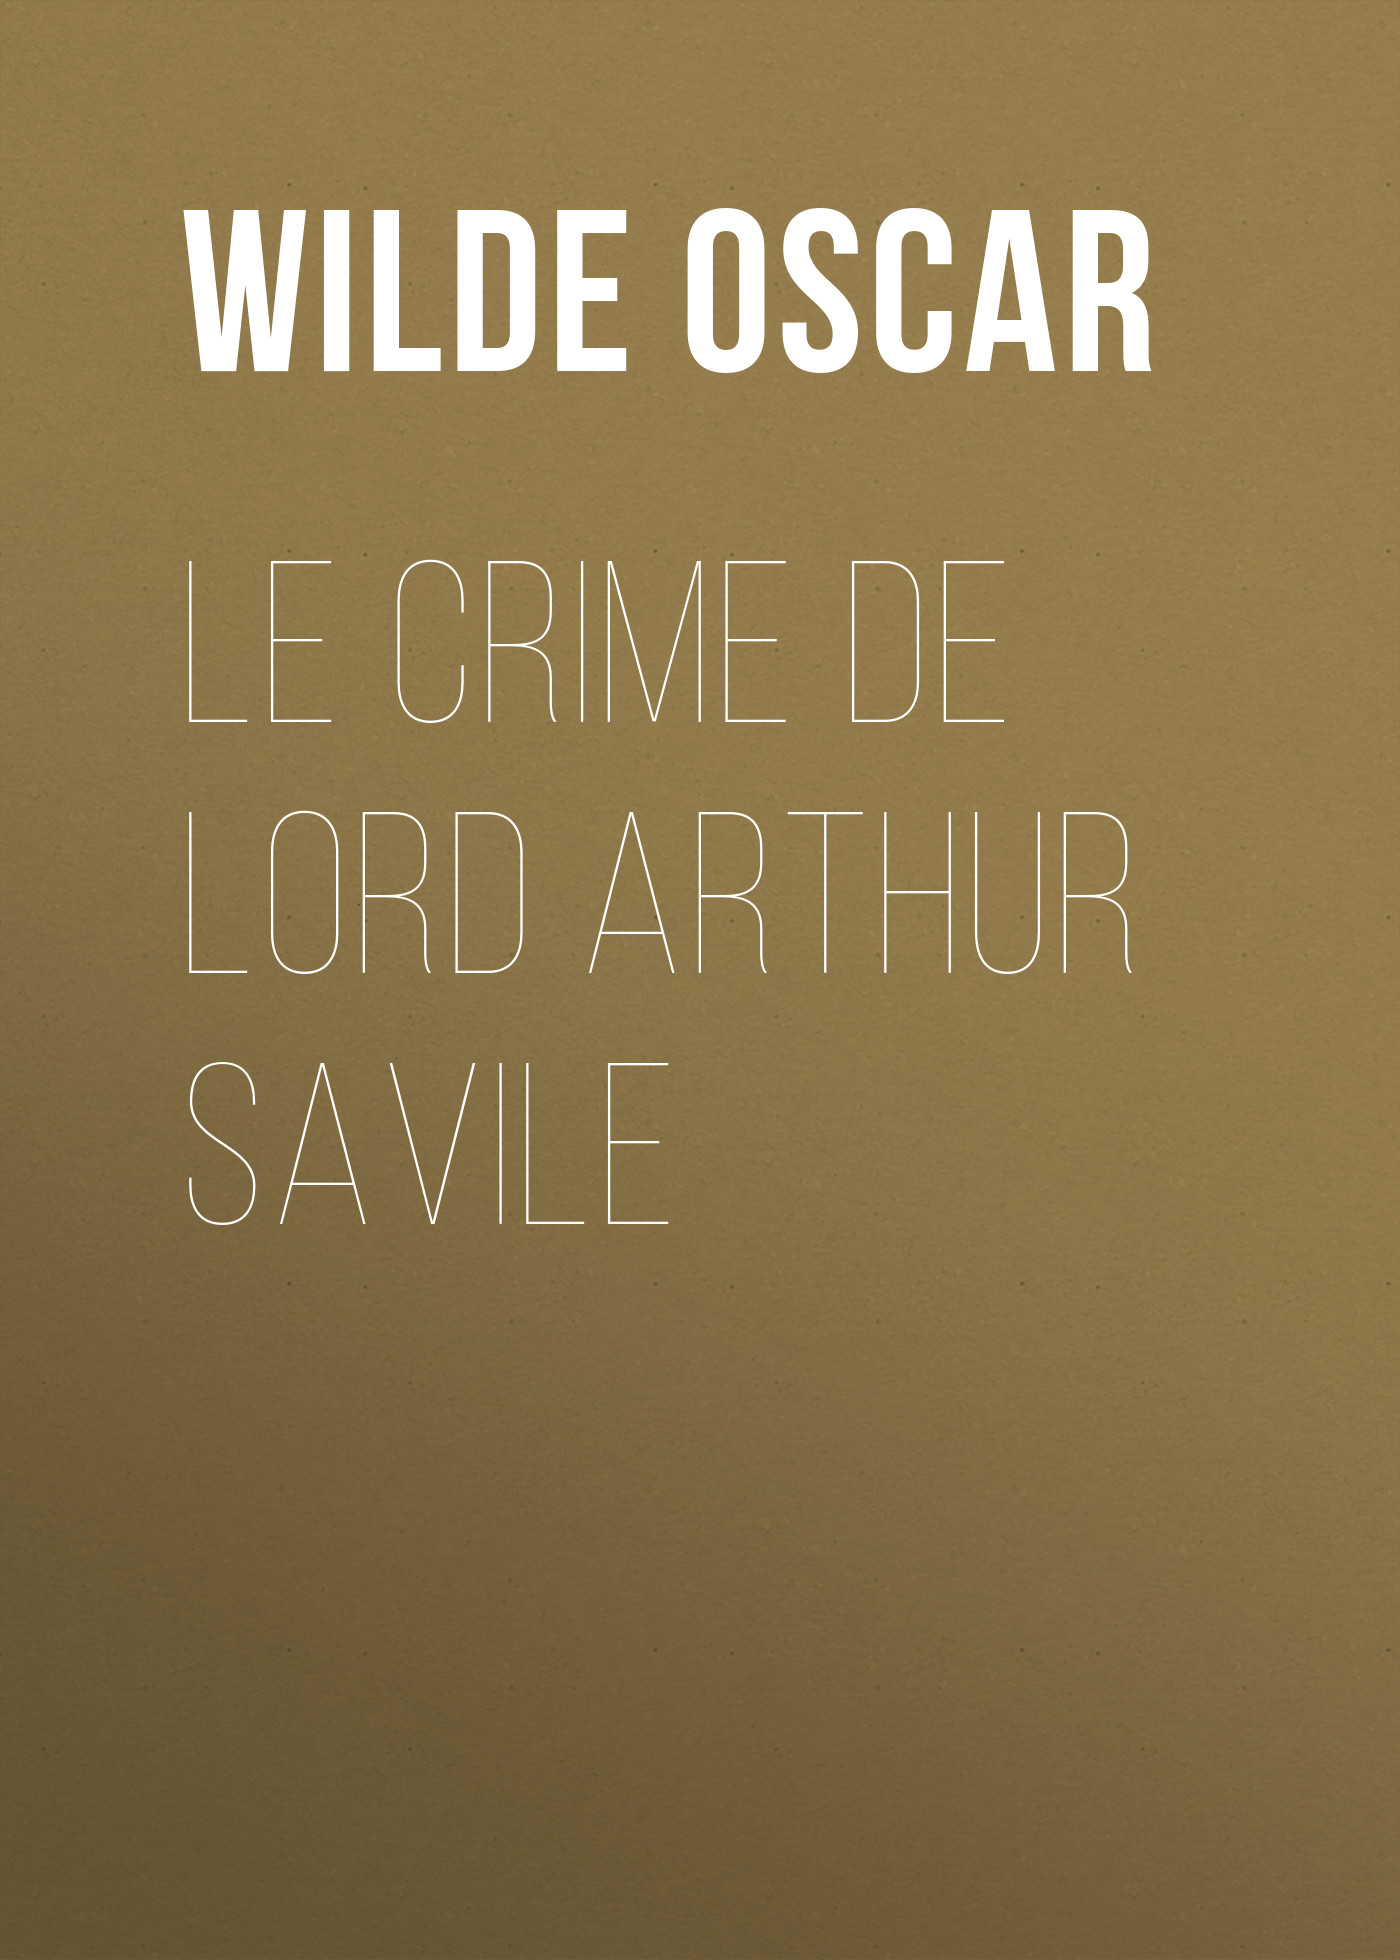 Книга Le crime de Lord Arthur Savile из серии , созданная Oscar Wilde, может относится к жанру Литература 19 века, Зарубежная классика. Стоимость электронной книги Le crime de Lord Arthur Savile с идентификатором 25561132 составляет 0 руб.